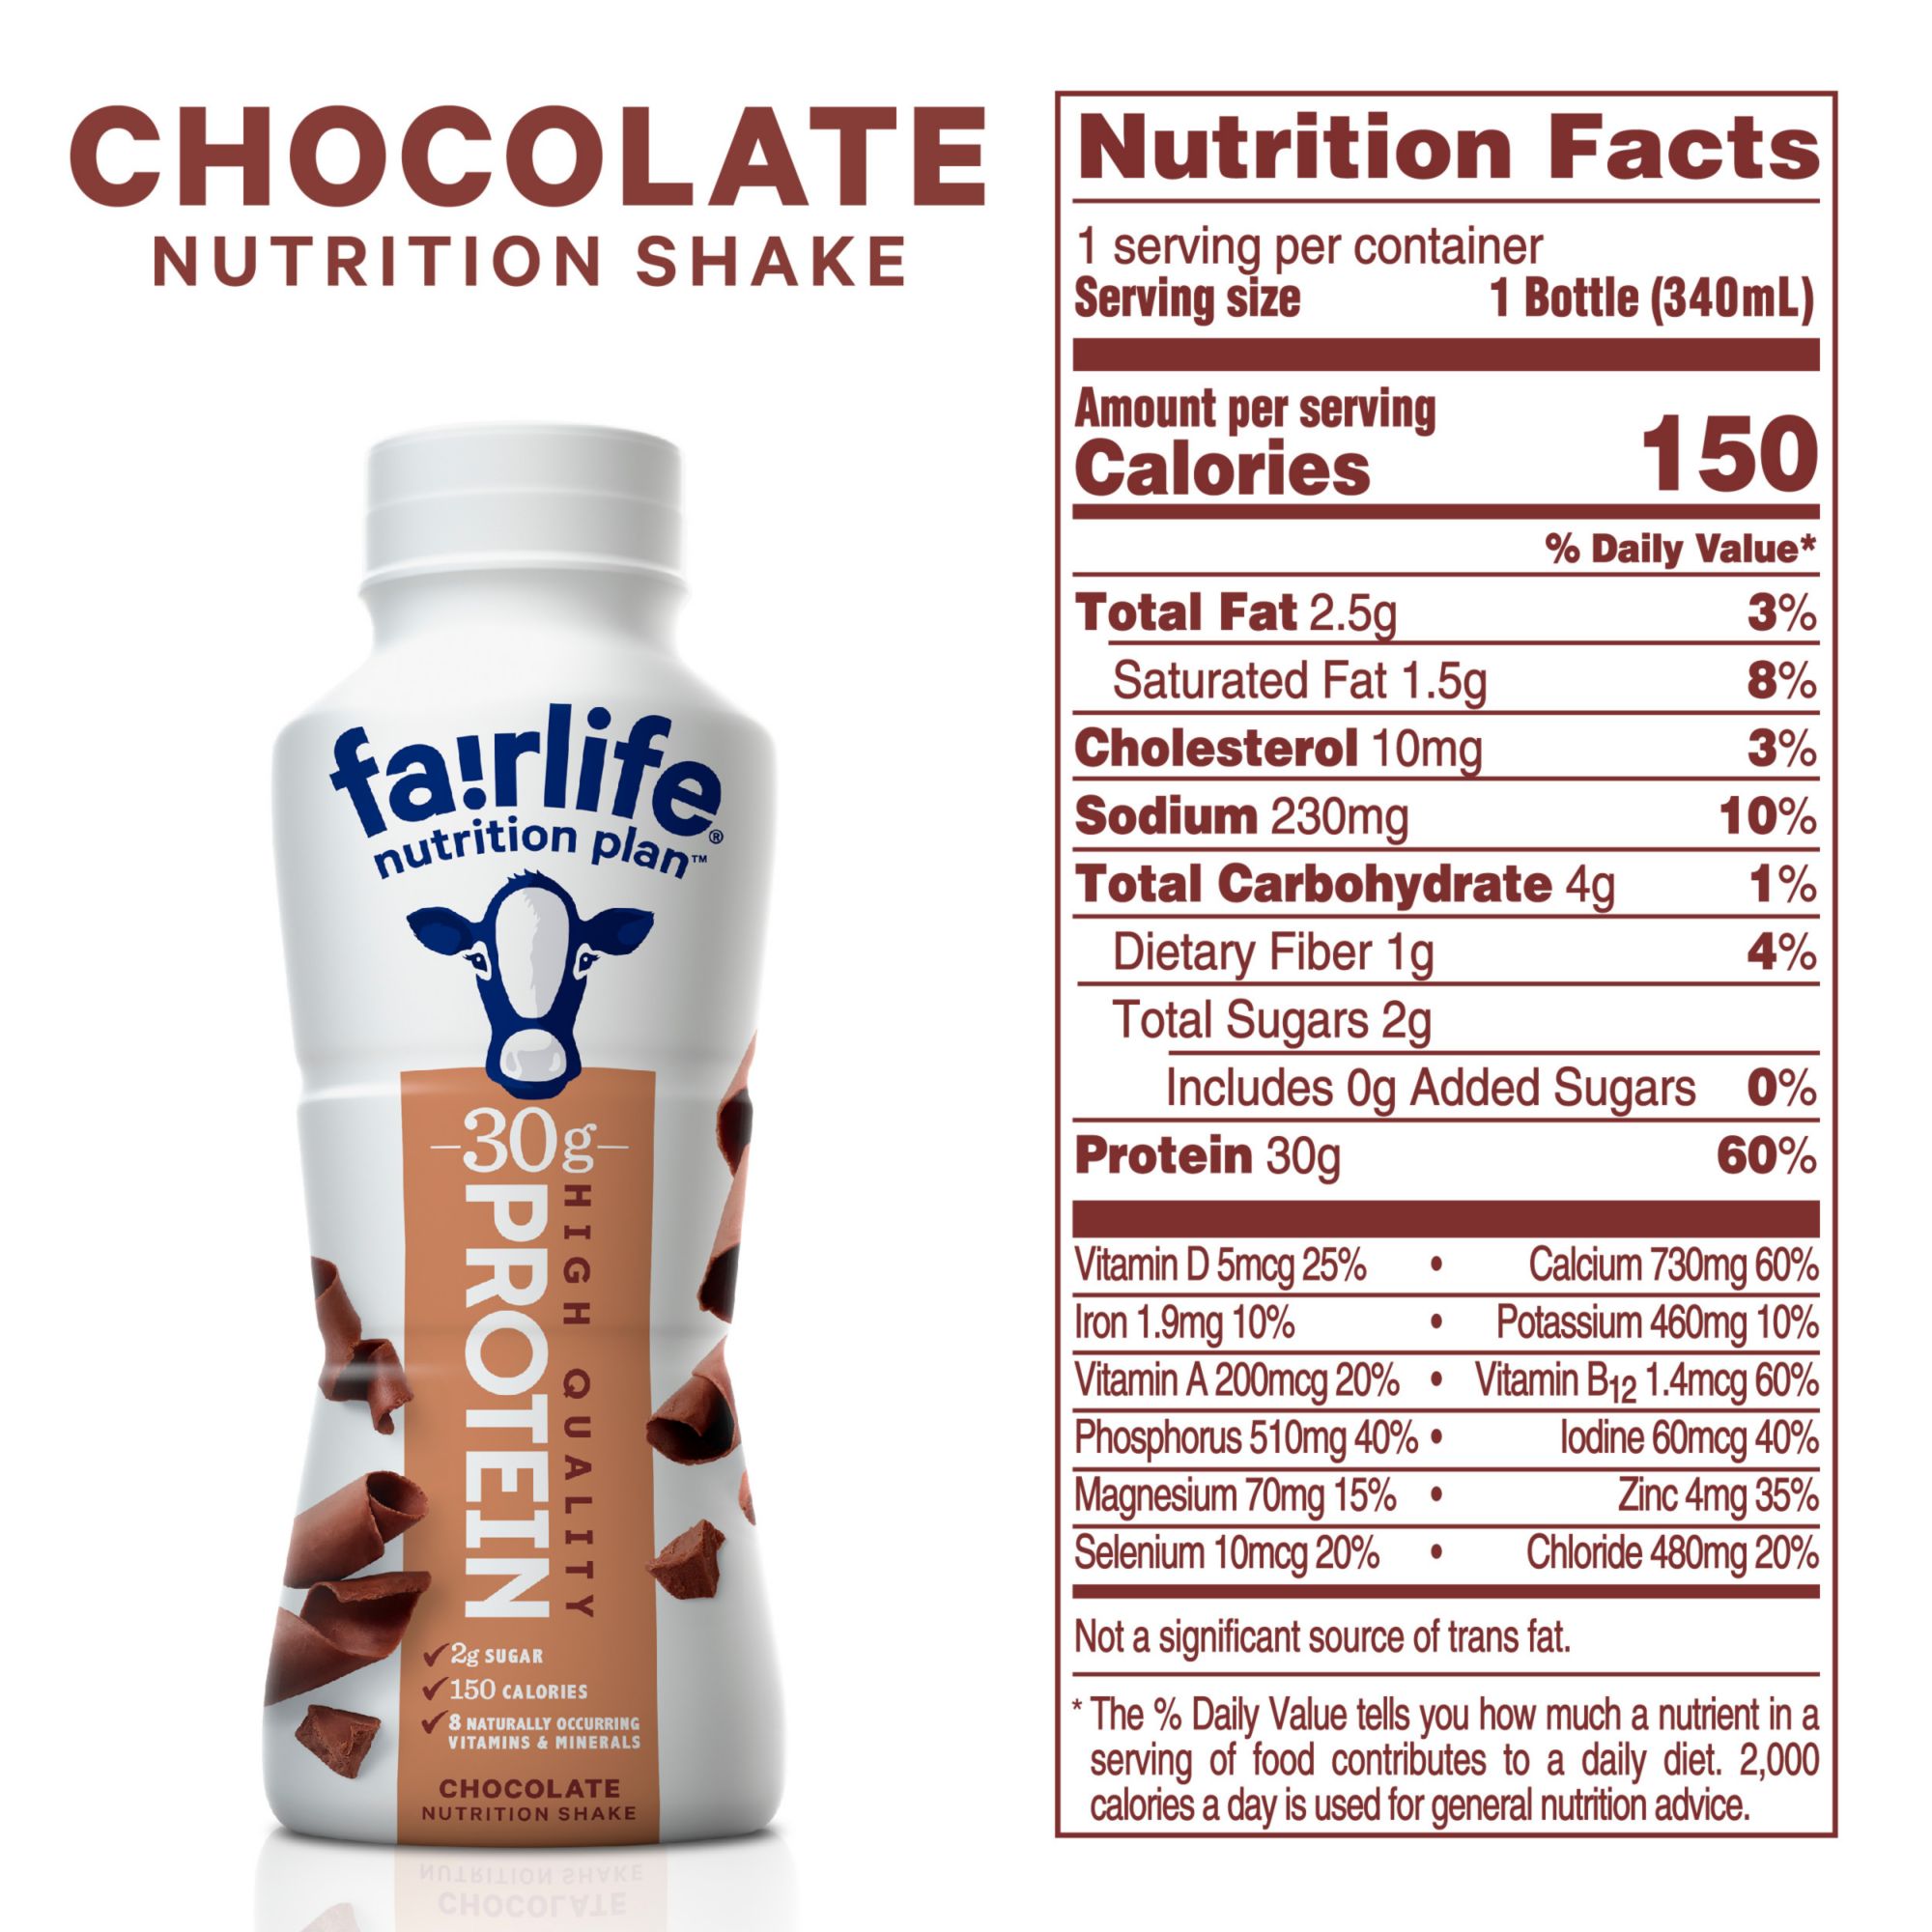 Fairlife Milk: Better than 